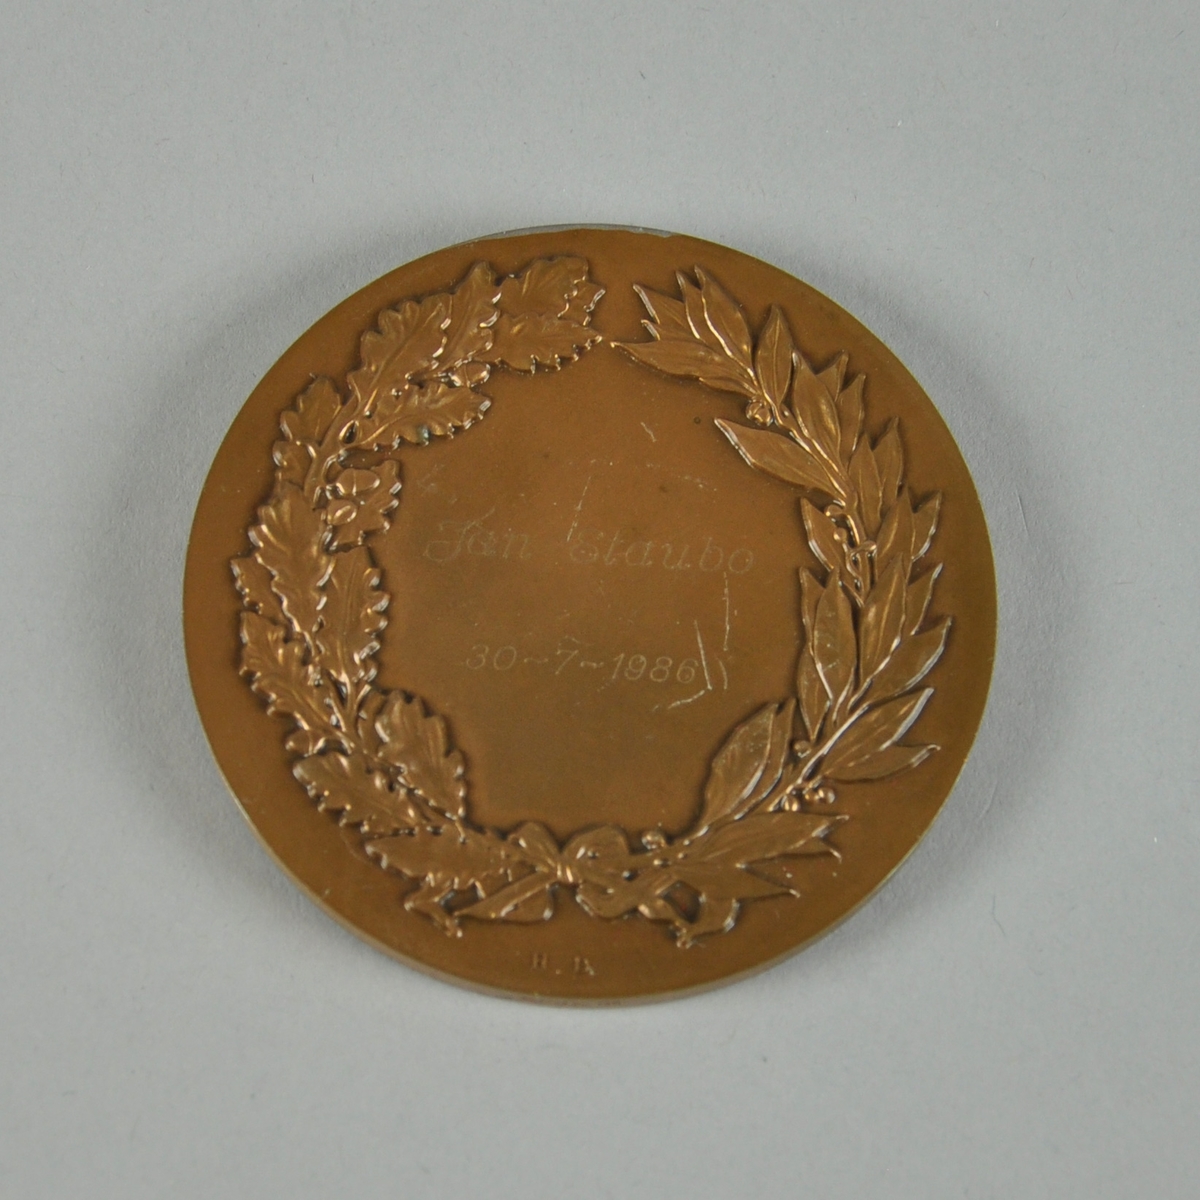 Bronsefarget medalje med motiv av to våpenskjold og det som ser ut til å være en olivenkrans. Med medaljen følger det en boks. Ligger i en rød eske av kartong med rødt fløyelsfôr og hvitt silkefôr.